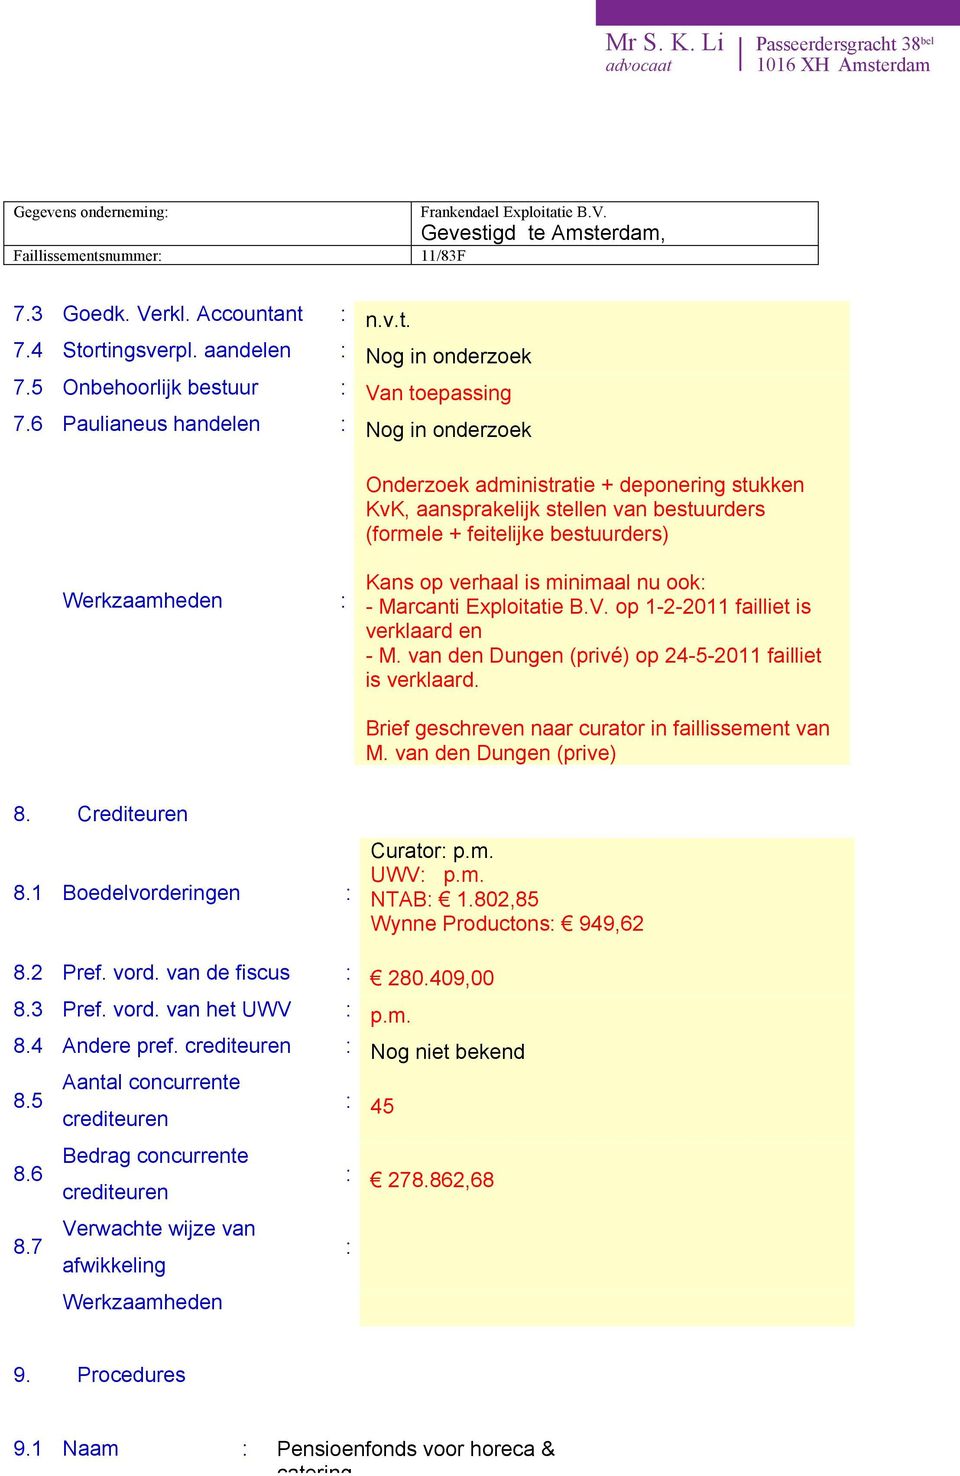 - Marcanti Exploitatie B.V. op 1-2-2011 failliet is verklaard en - M. van den Dungen (privé) op 24-5-2011 failliet is verklaard. Brief geschreven naar curator in faillissement van M.